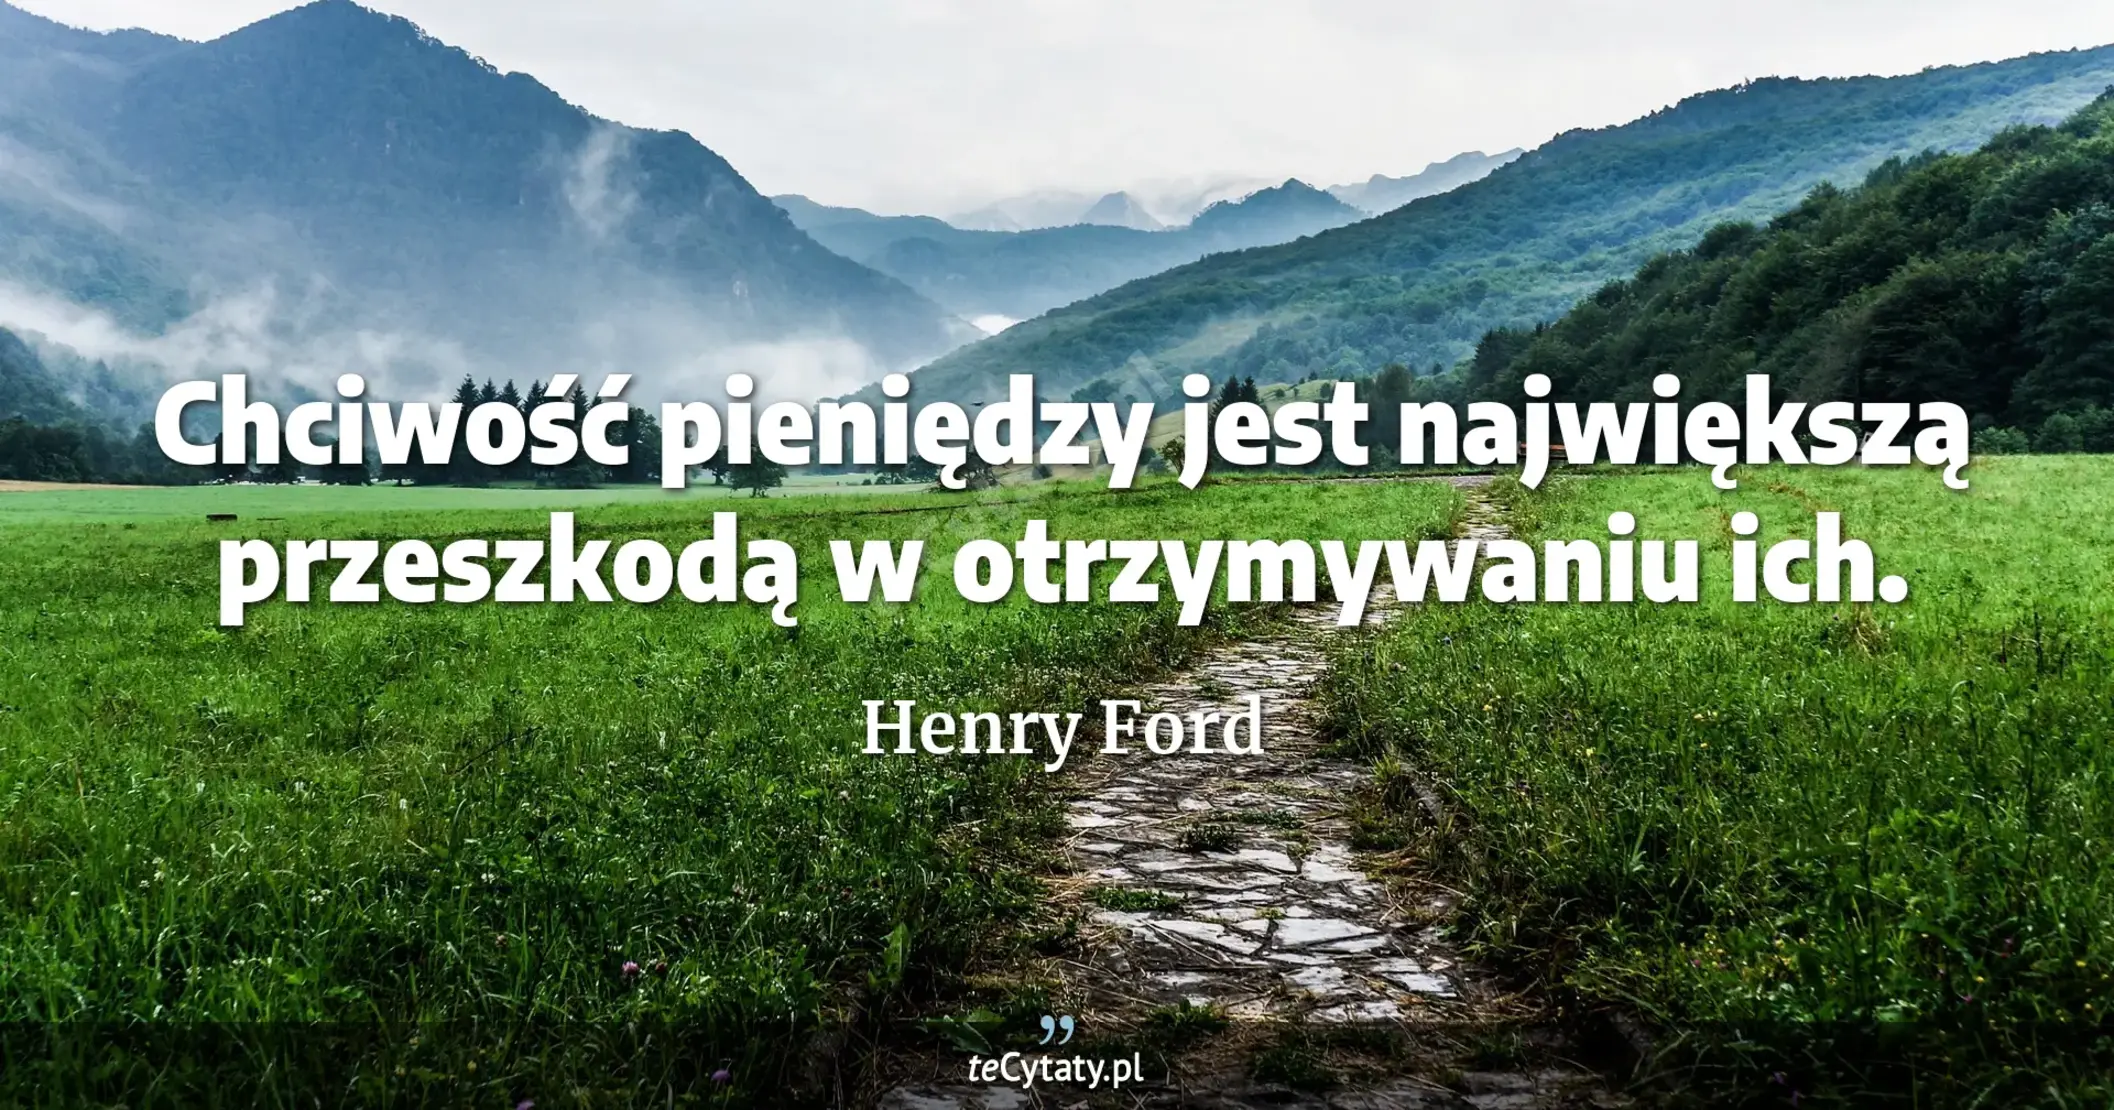 Chciwość pieniędzy jest największą przeszkodą w otrzymywaniu ich. - Henry Ford